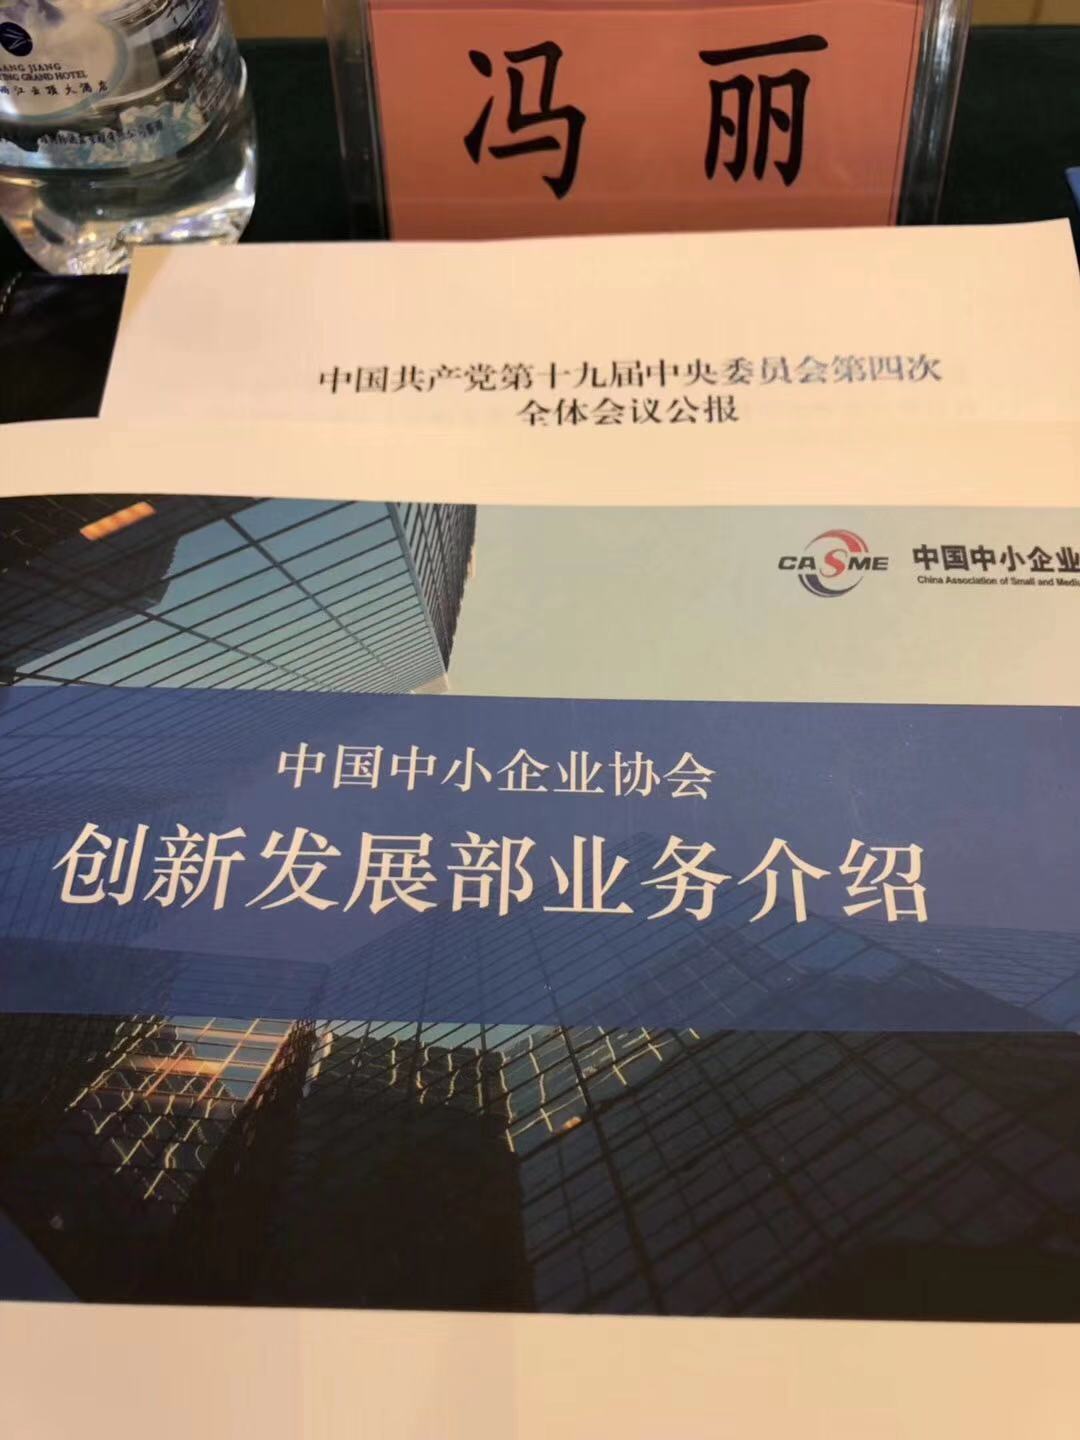 2019中国中小企业发展大会暨第十三届中国中小企业节11月1日隆重开幕